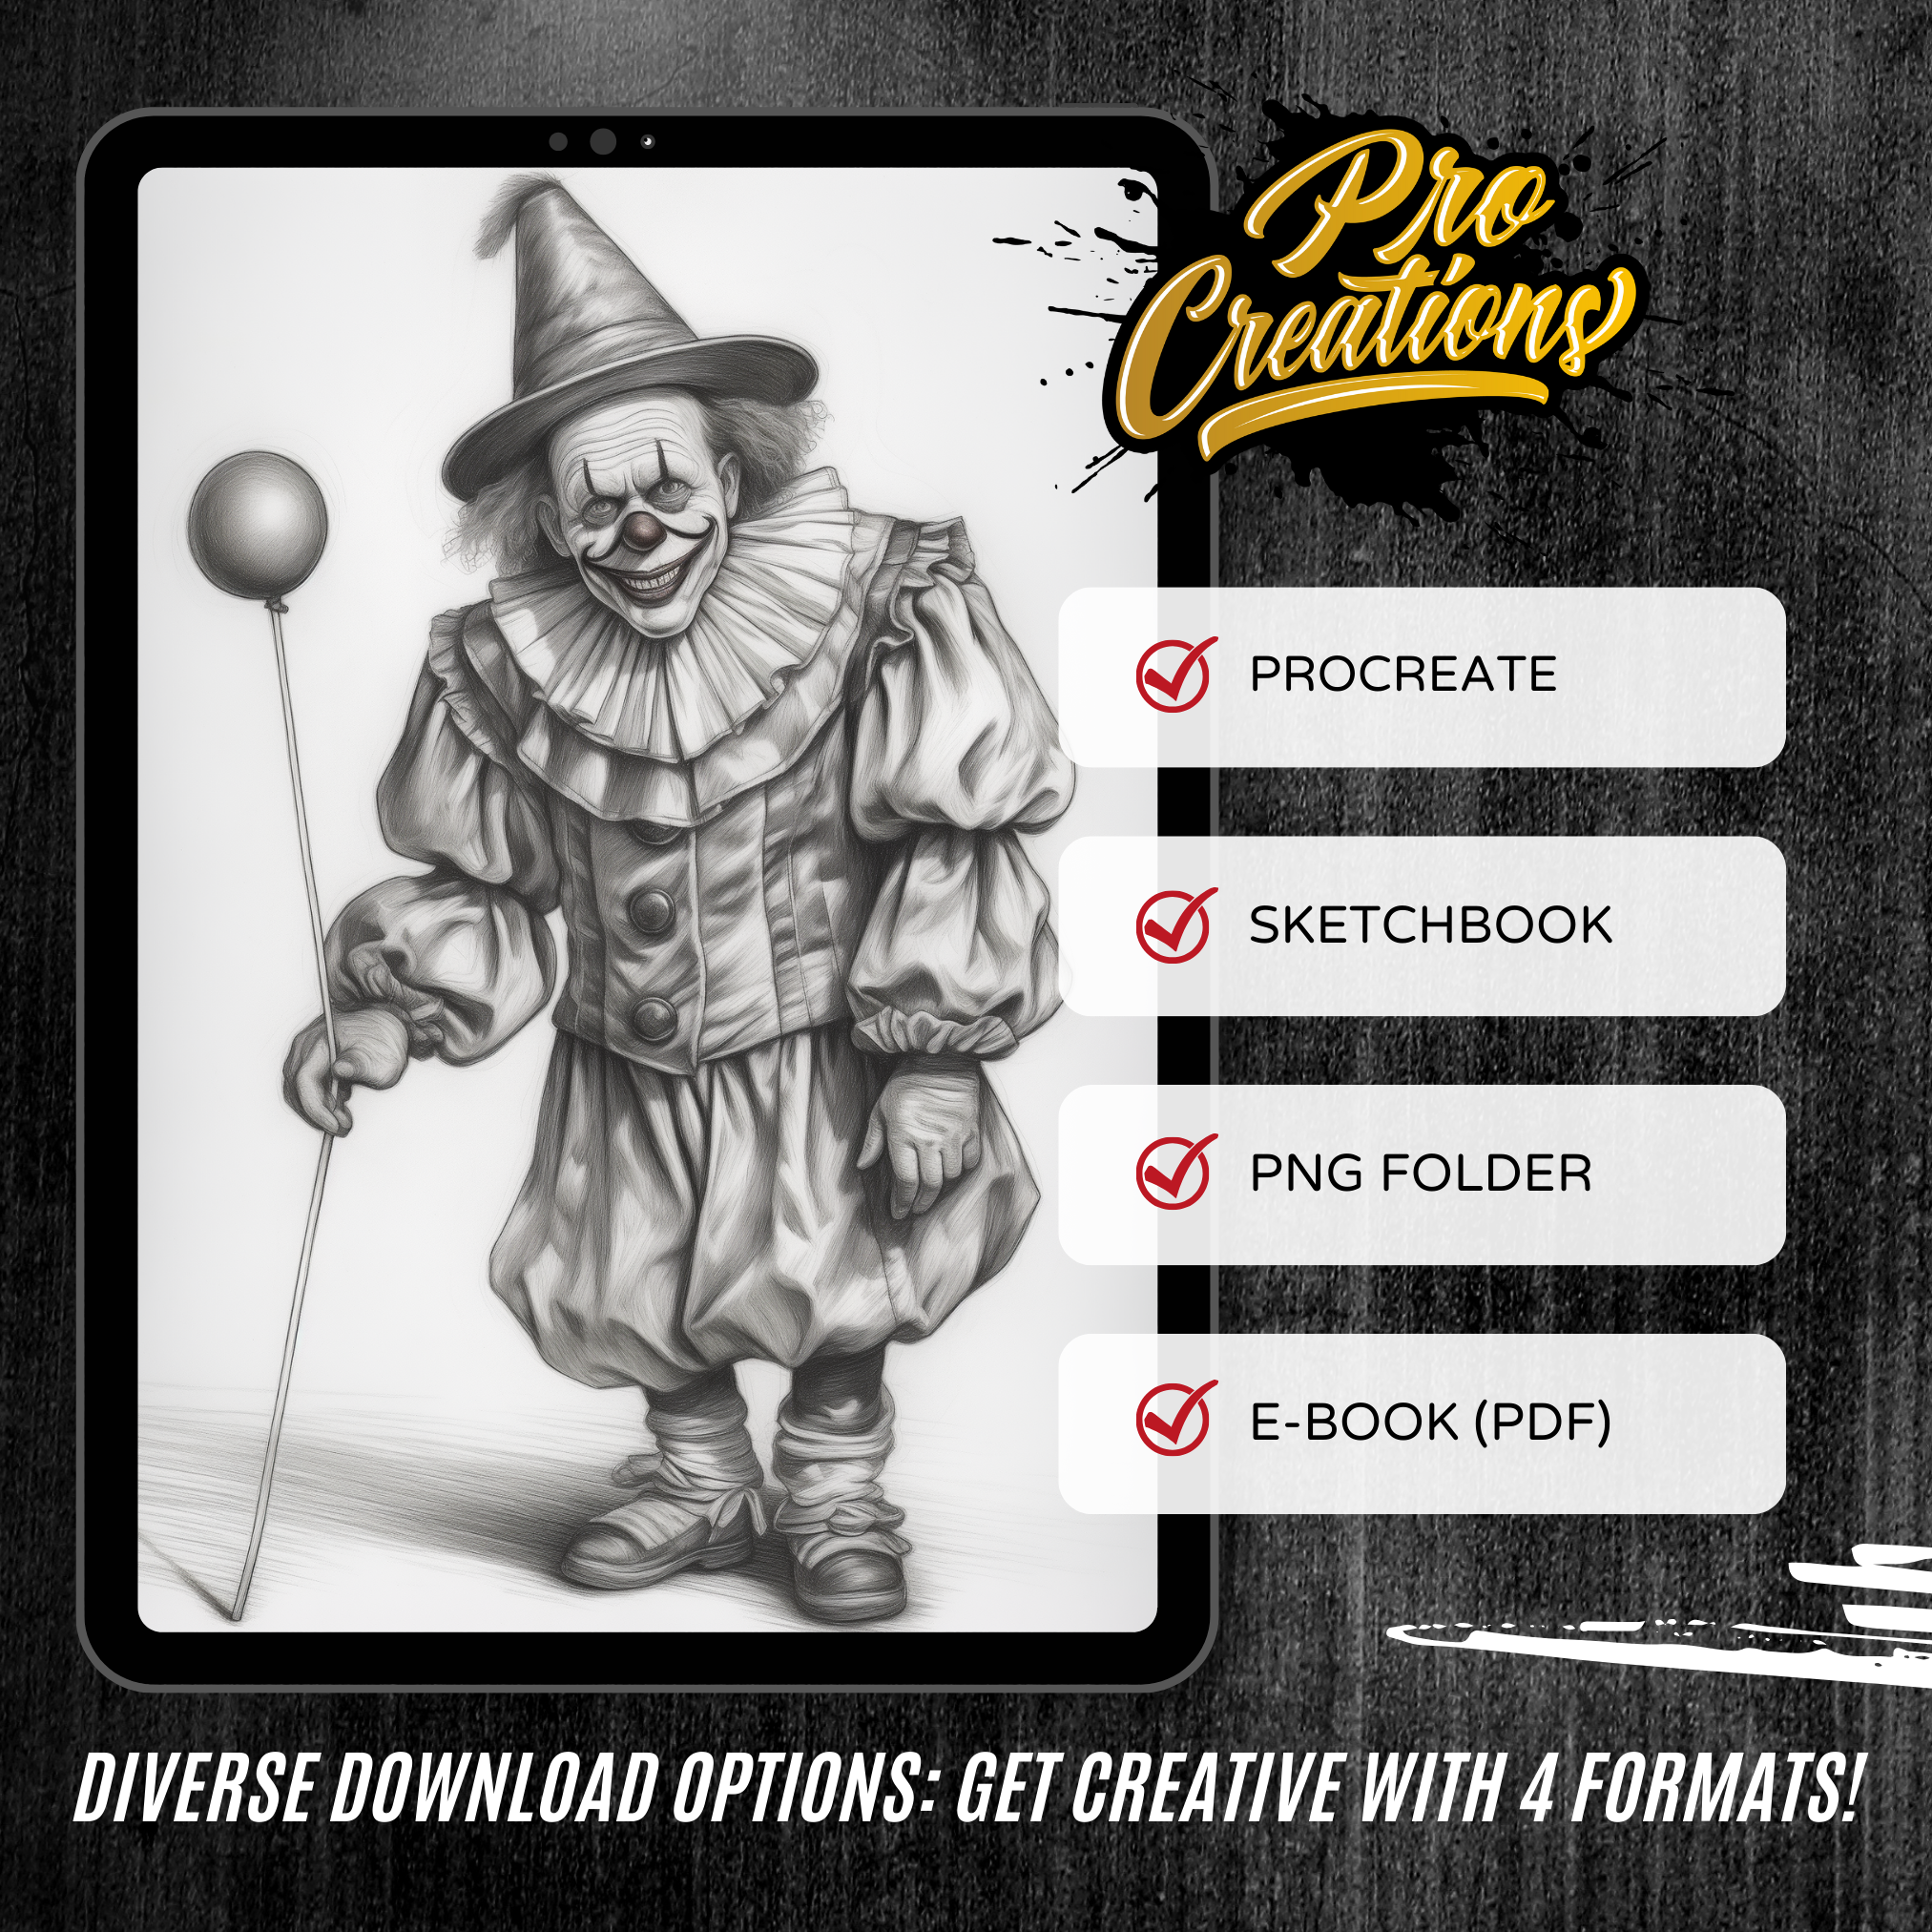 Killer Clowns Digital Horror Design Collection: 50 Procreate & Sketchbook Images